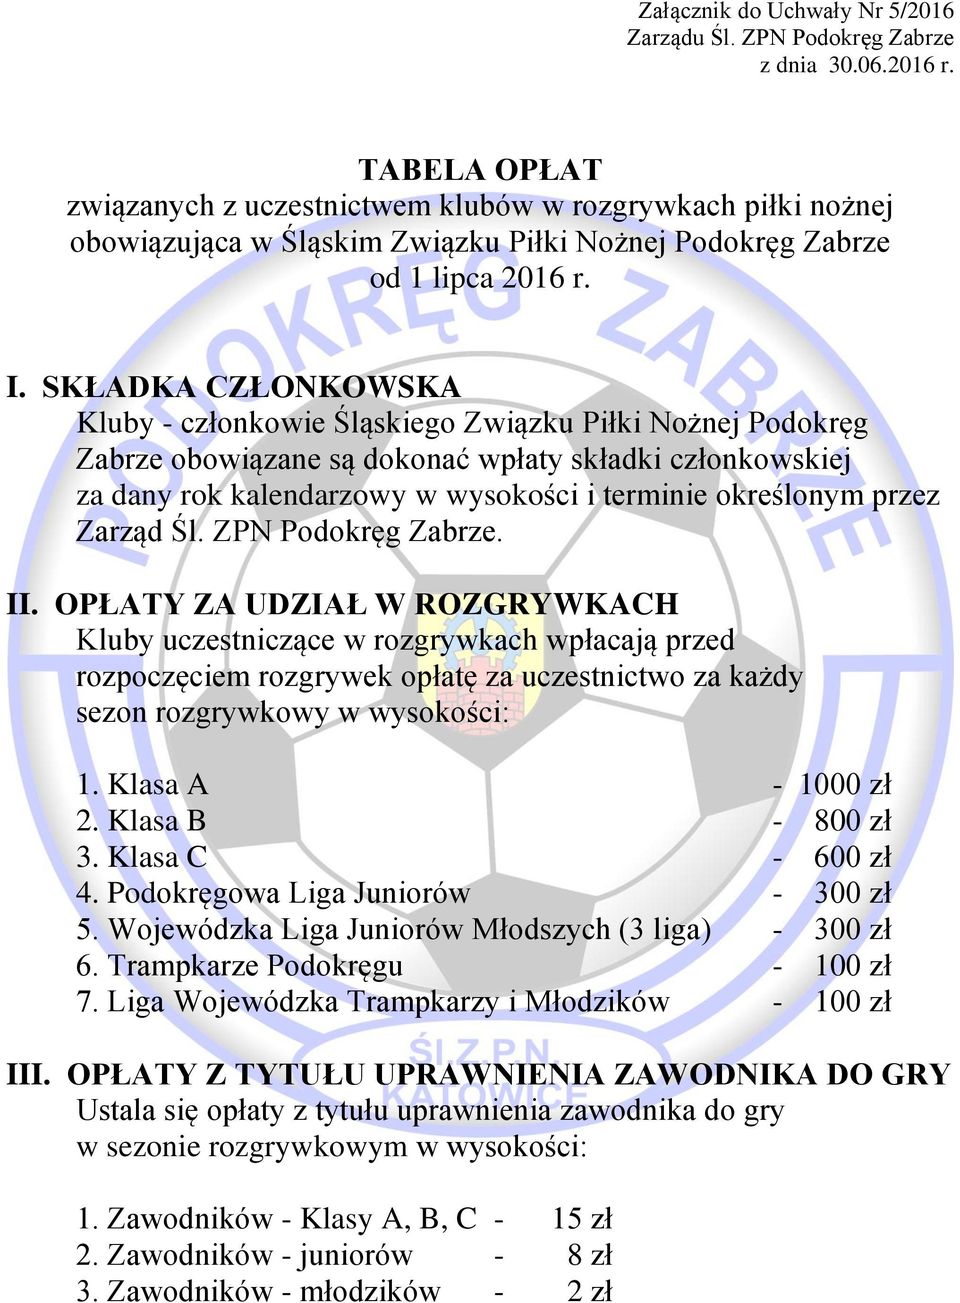 SKŁADKA CZŁONKOWSKA Kluby - członkowie Śląskiego Związku Piłki Nożnej Podokręg Zabrze obowiązane są dokonać wpłaty składki członkowskiej za dany rok kalendarzowy w wysokości i terminie określonym